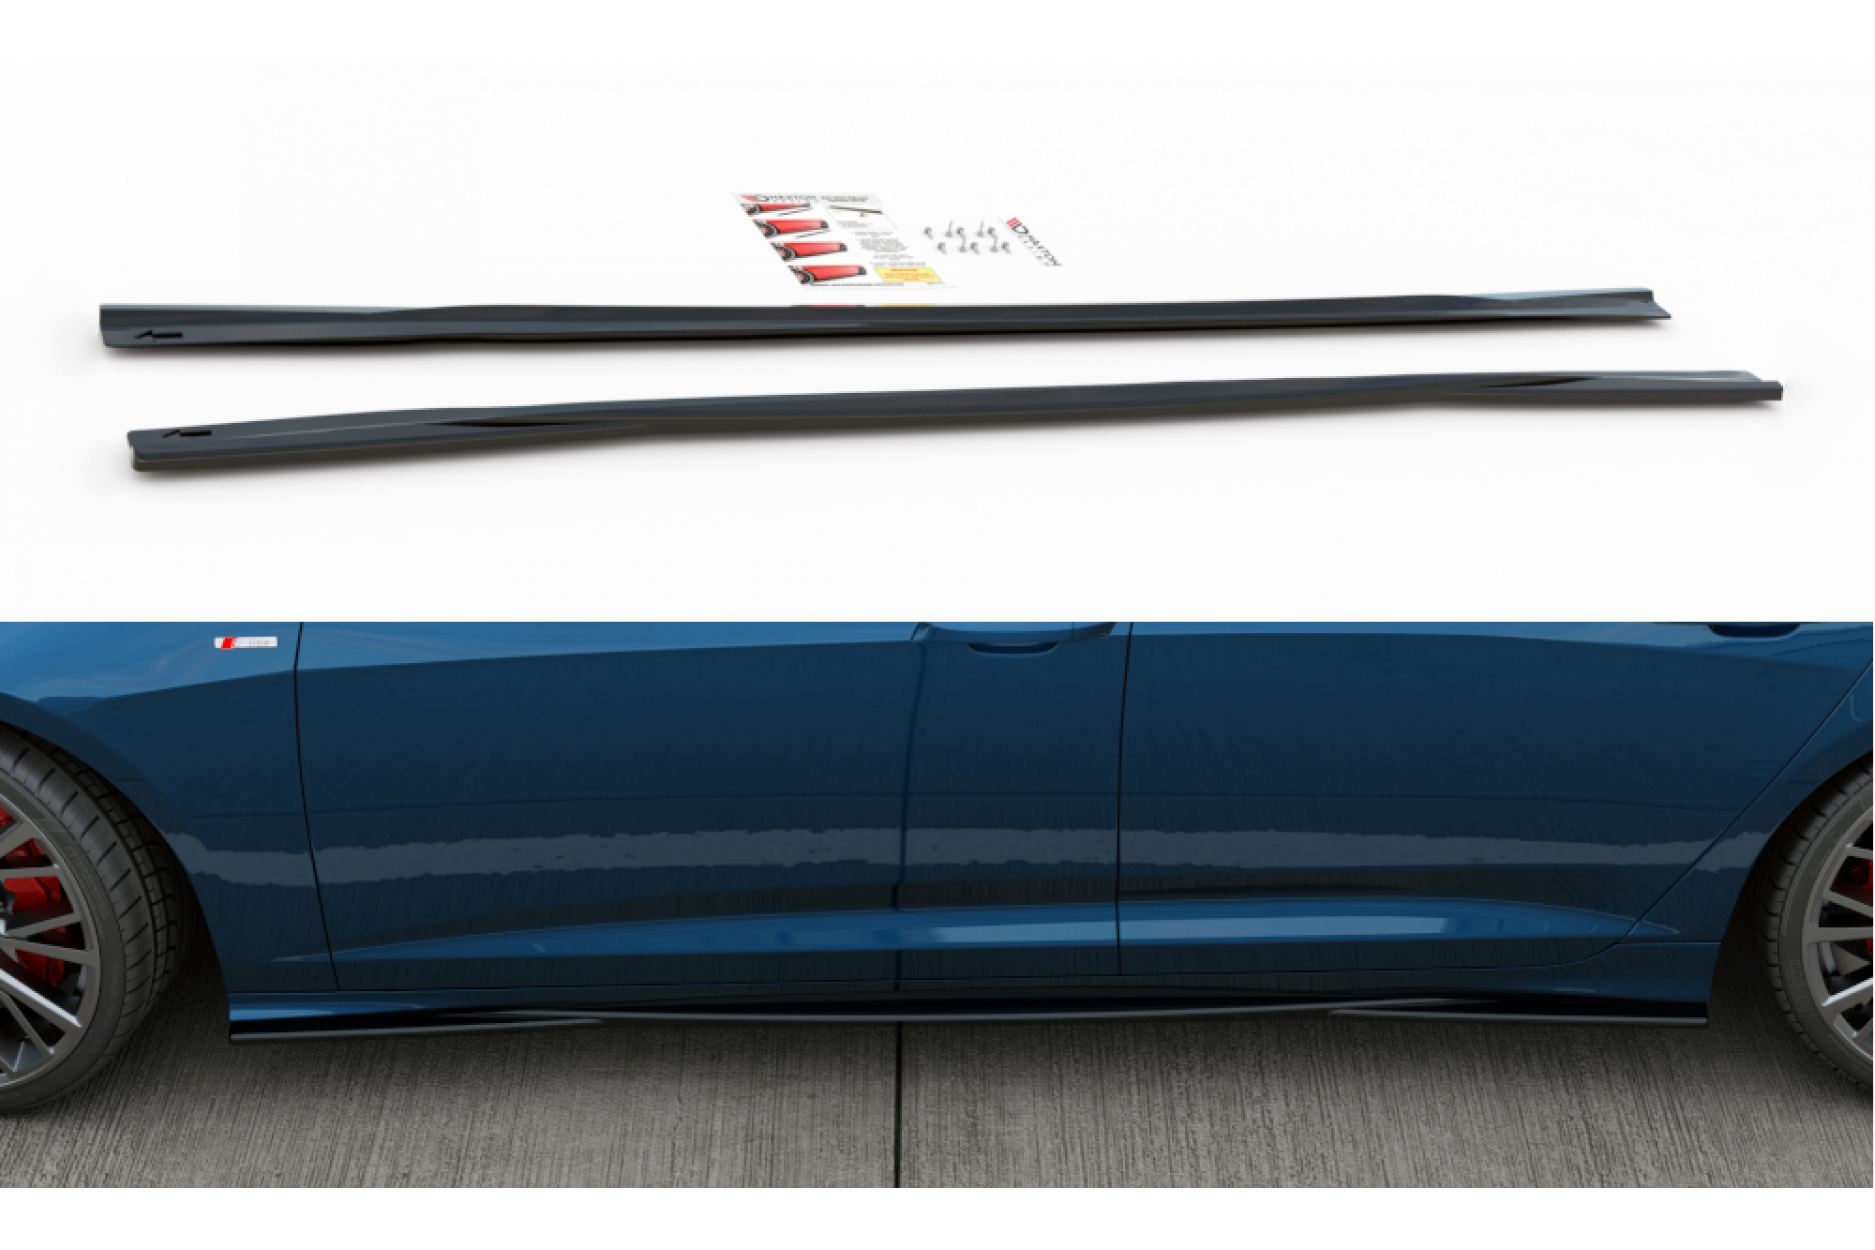 Maxtondesign Seitenschweller für Audi A6S6 C8 S-Line schwarz hochglanz -  buy online at CFD